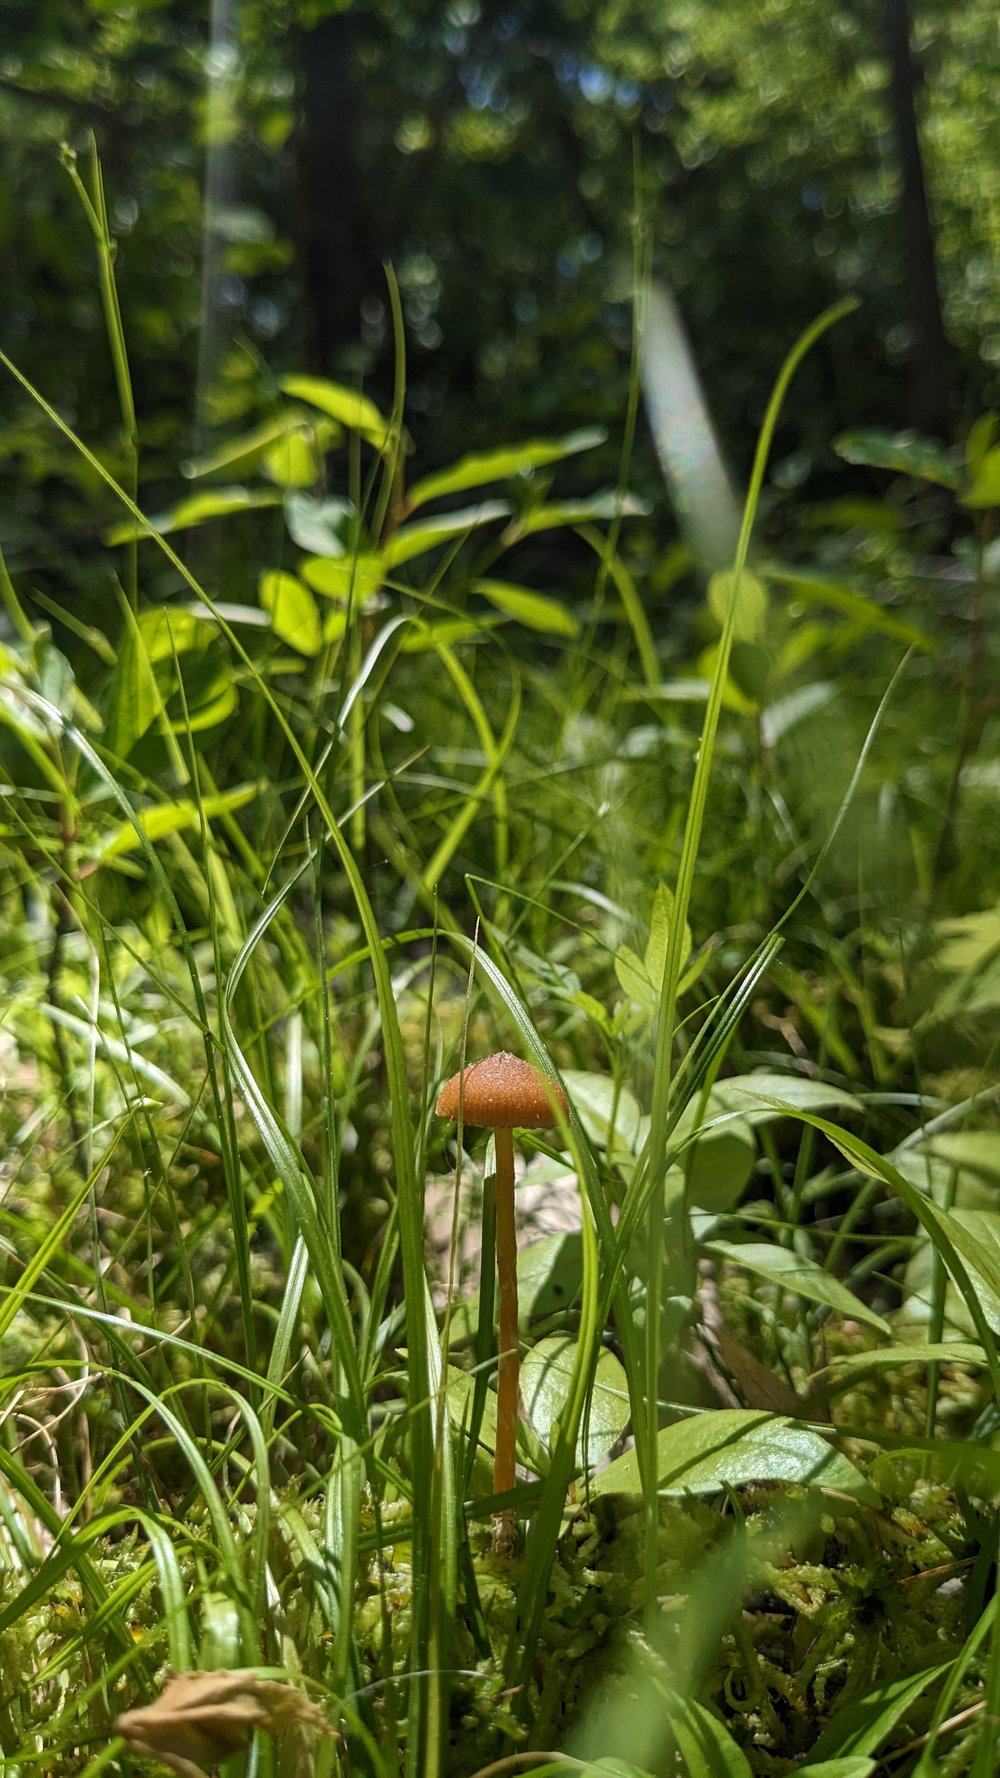 mushroom_minneapolis_mycology_minnesota_tiny_toadstool.jpg